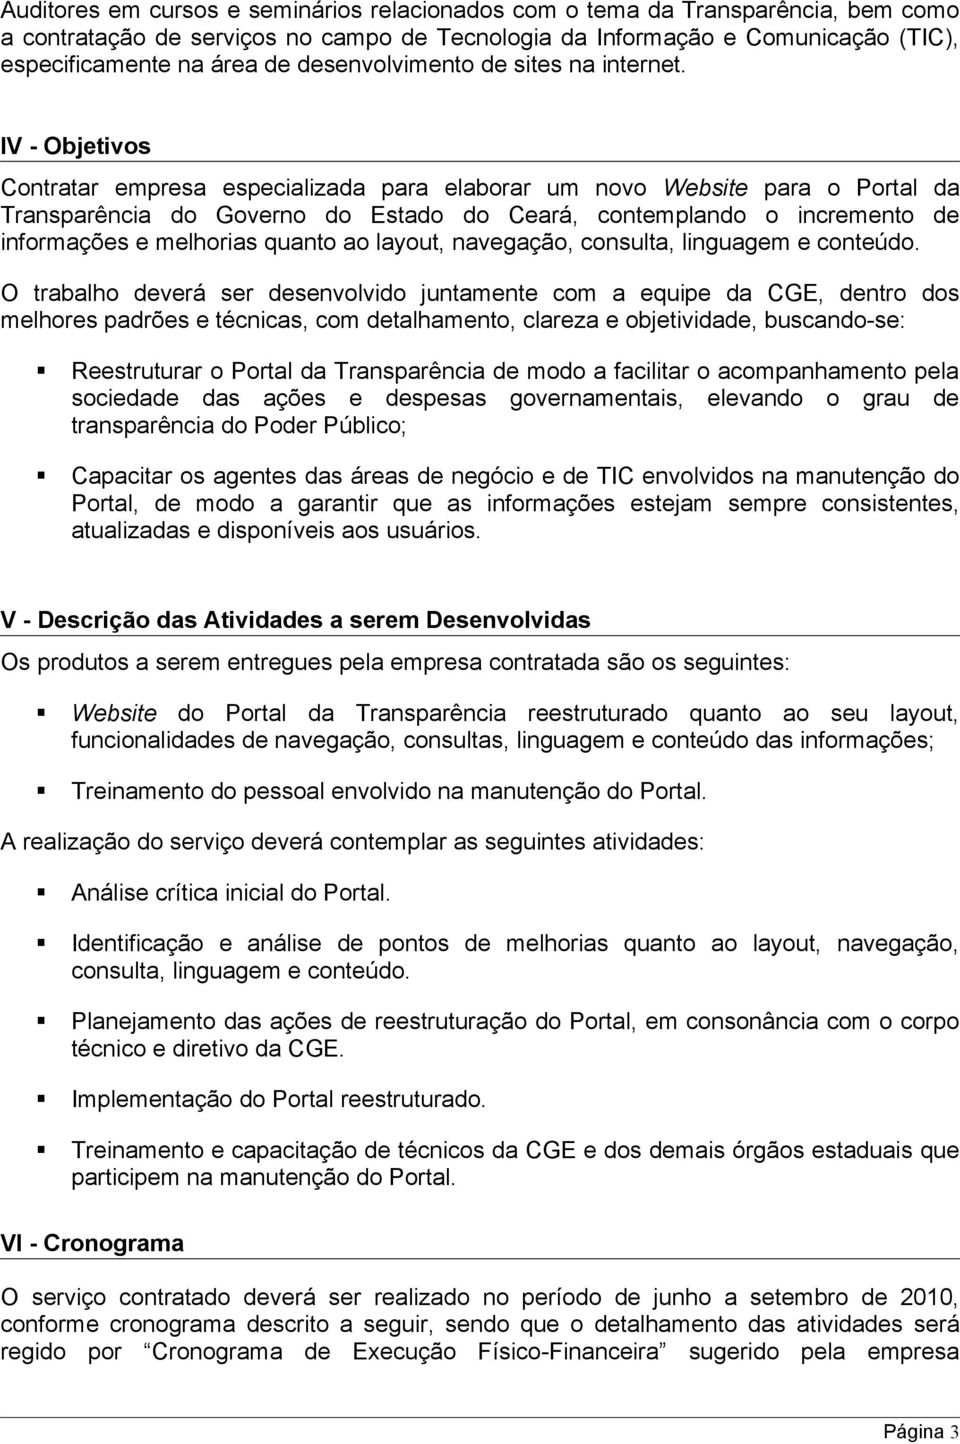 IV - Objetivos Contratar empresa especializada para elaborar um novo Website para o Portal da Transparência do Governo do Estado do Ceará, contemplando o incremento de informações e melhorias quanto